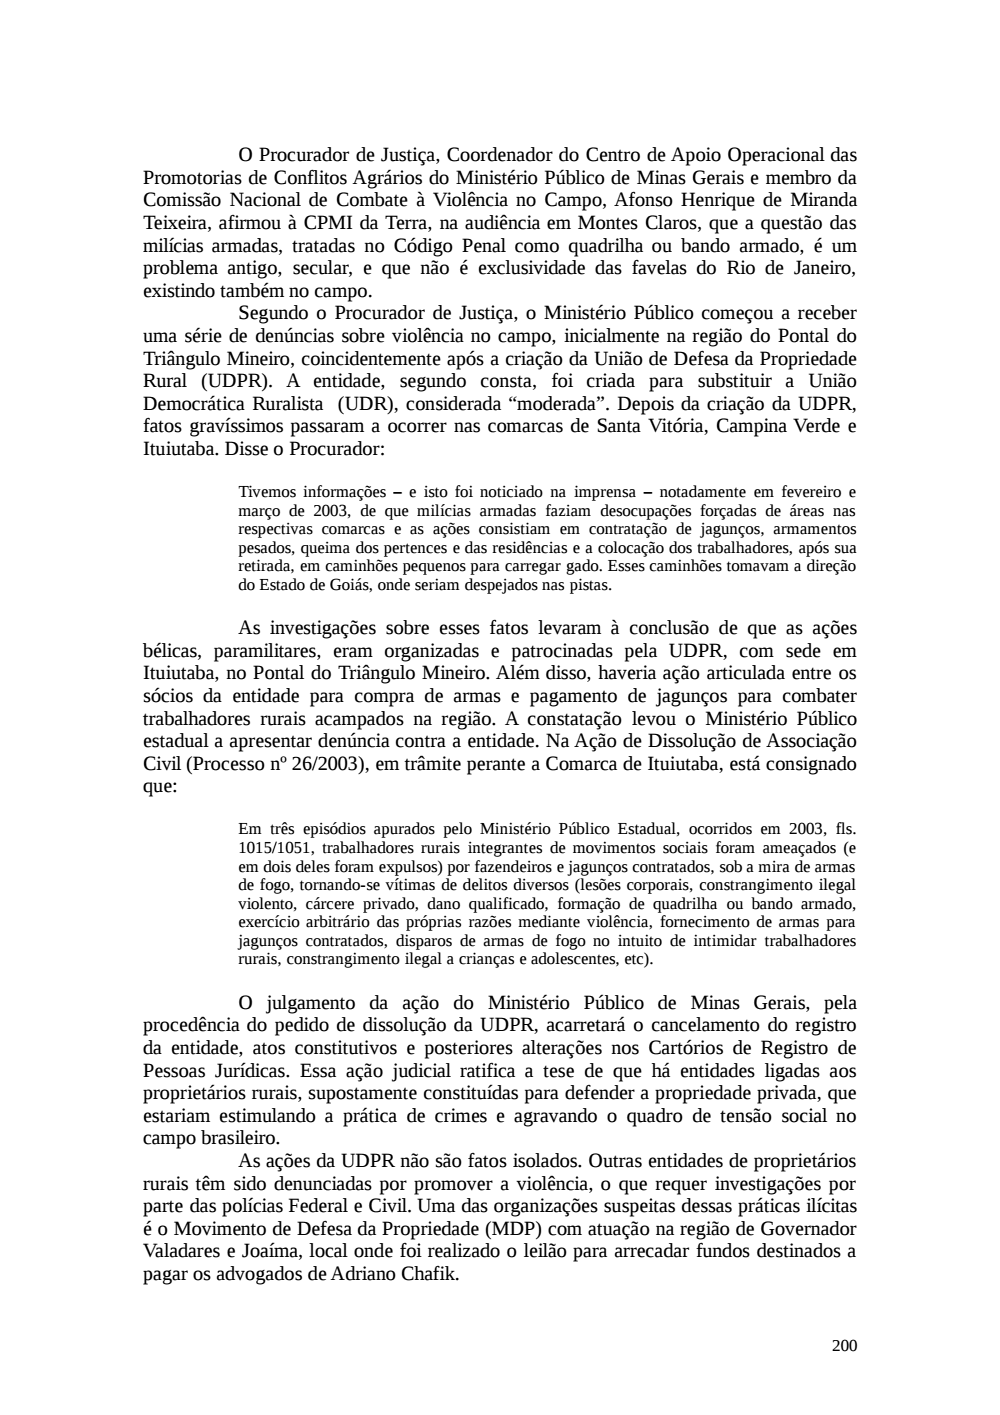 Page 200 from Relatório final da comissão